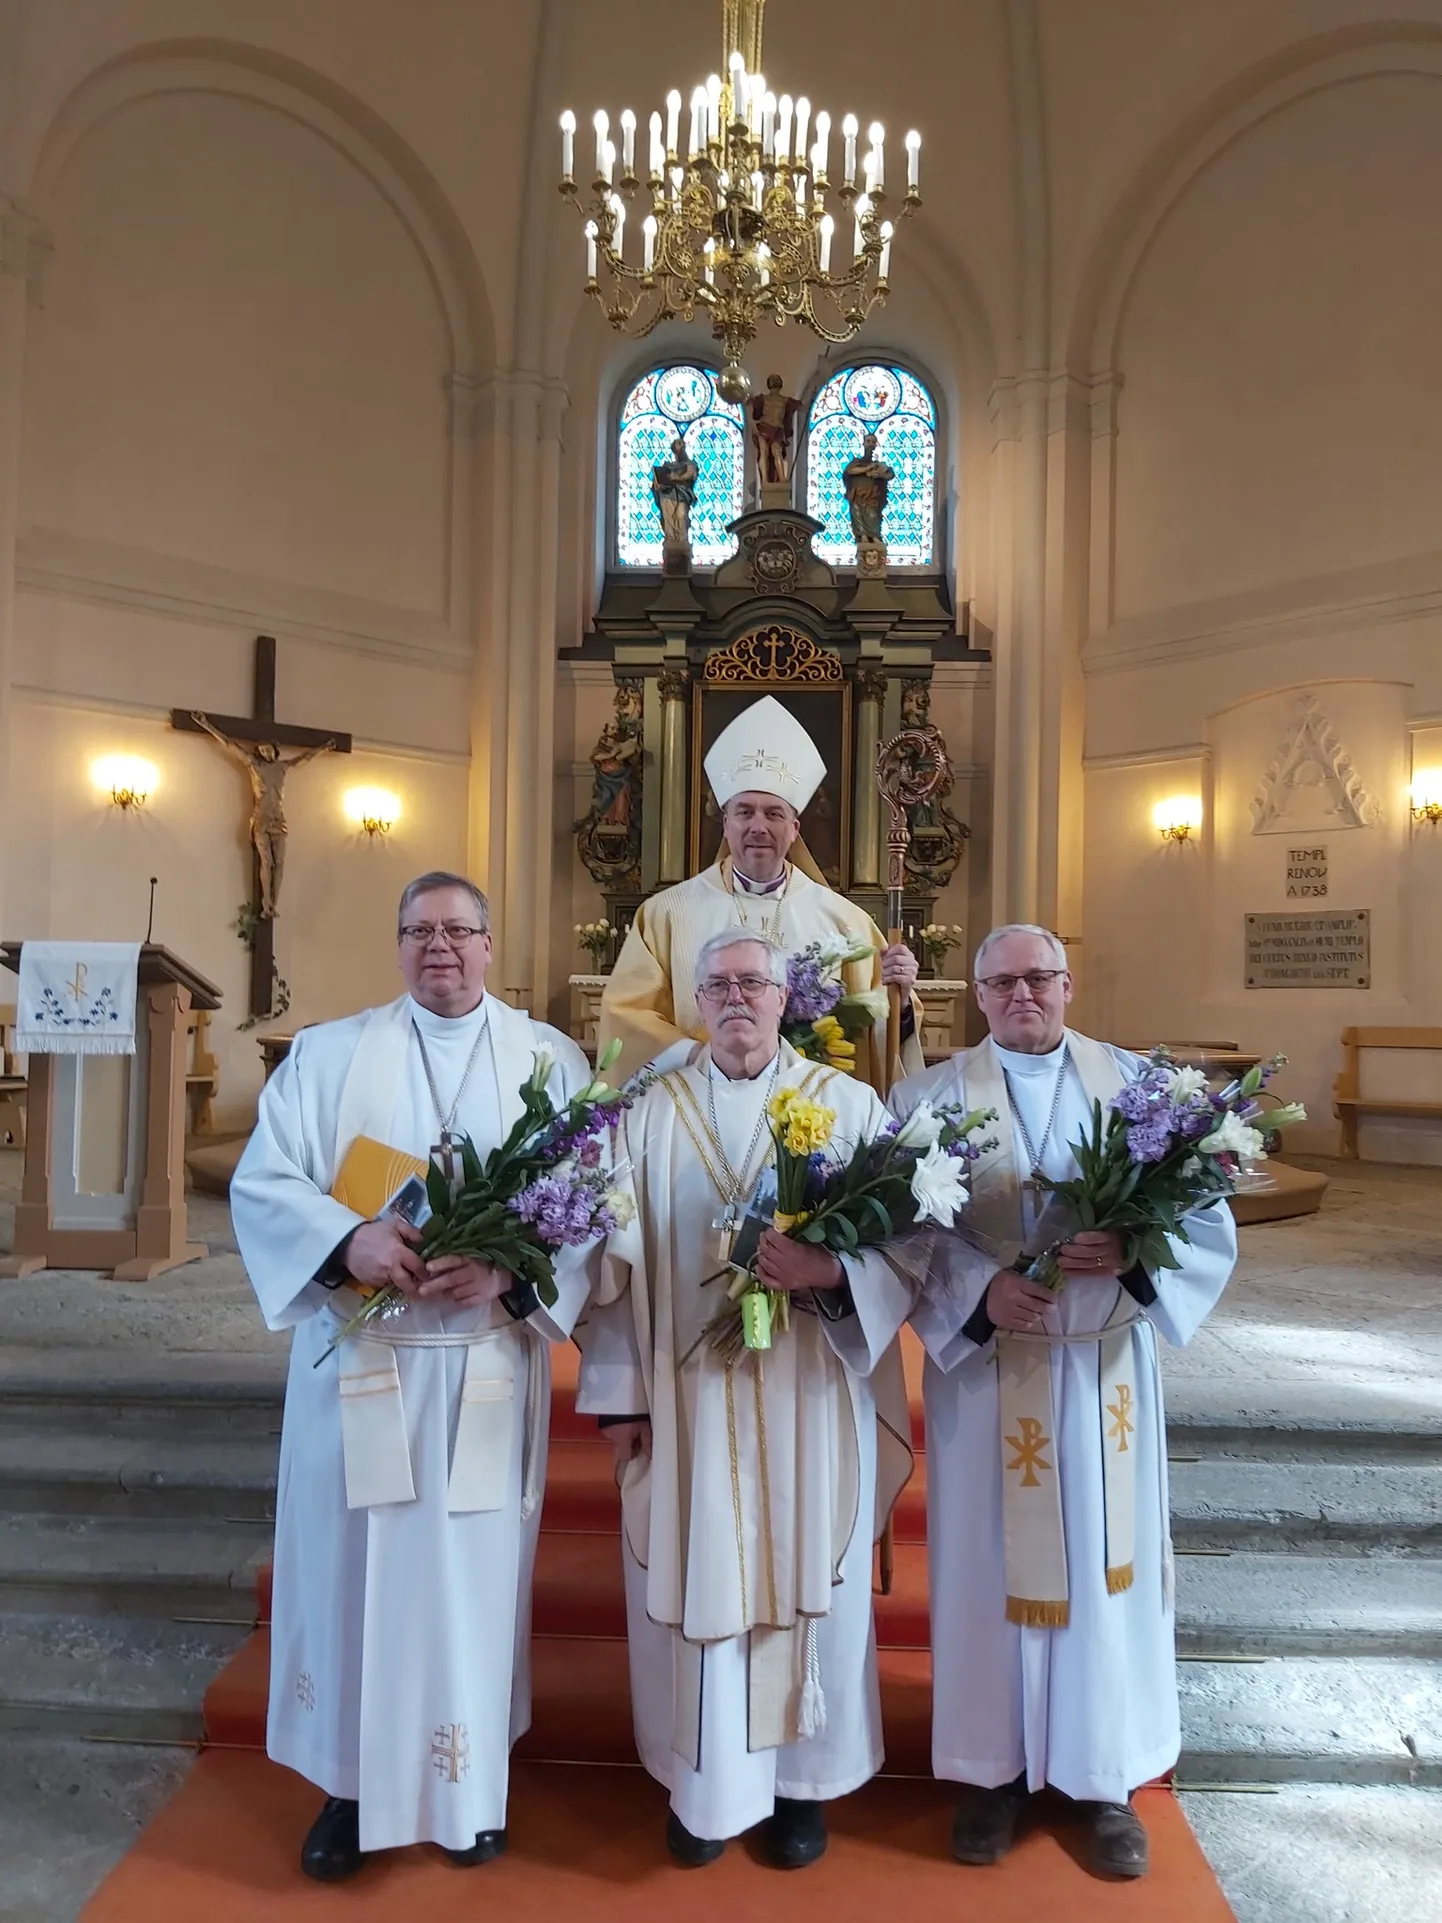 Eile tähistati kolme kirikuõpetaja,  Järva praostkonna abipraost  Tõnu Linnasmäe (paremalt esimene), Rapla kirikuõpetaja Mikk Kuke ning Saarte praostkonna vikaarvaimulik Algur Kaerma ordinatsiooni 40. aastapäeva.